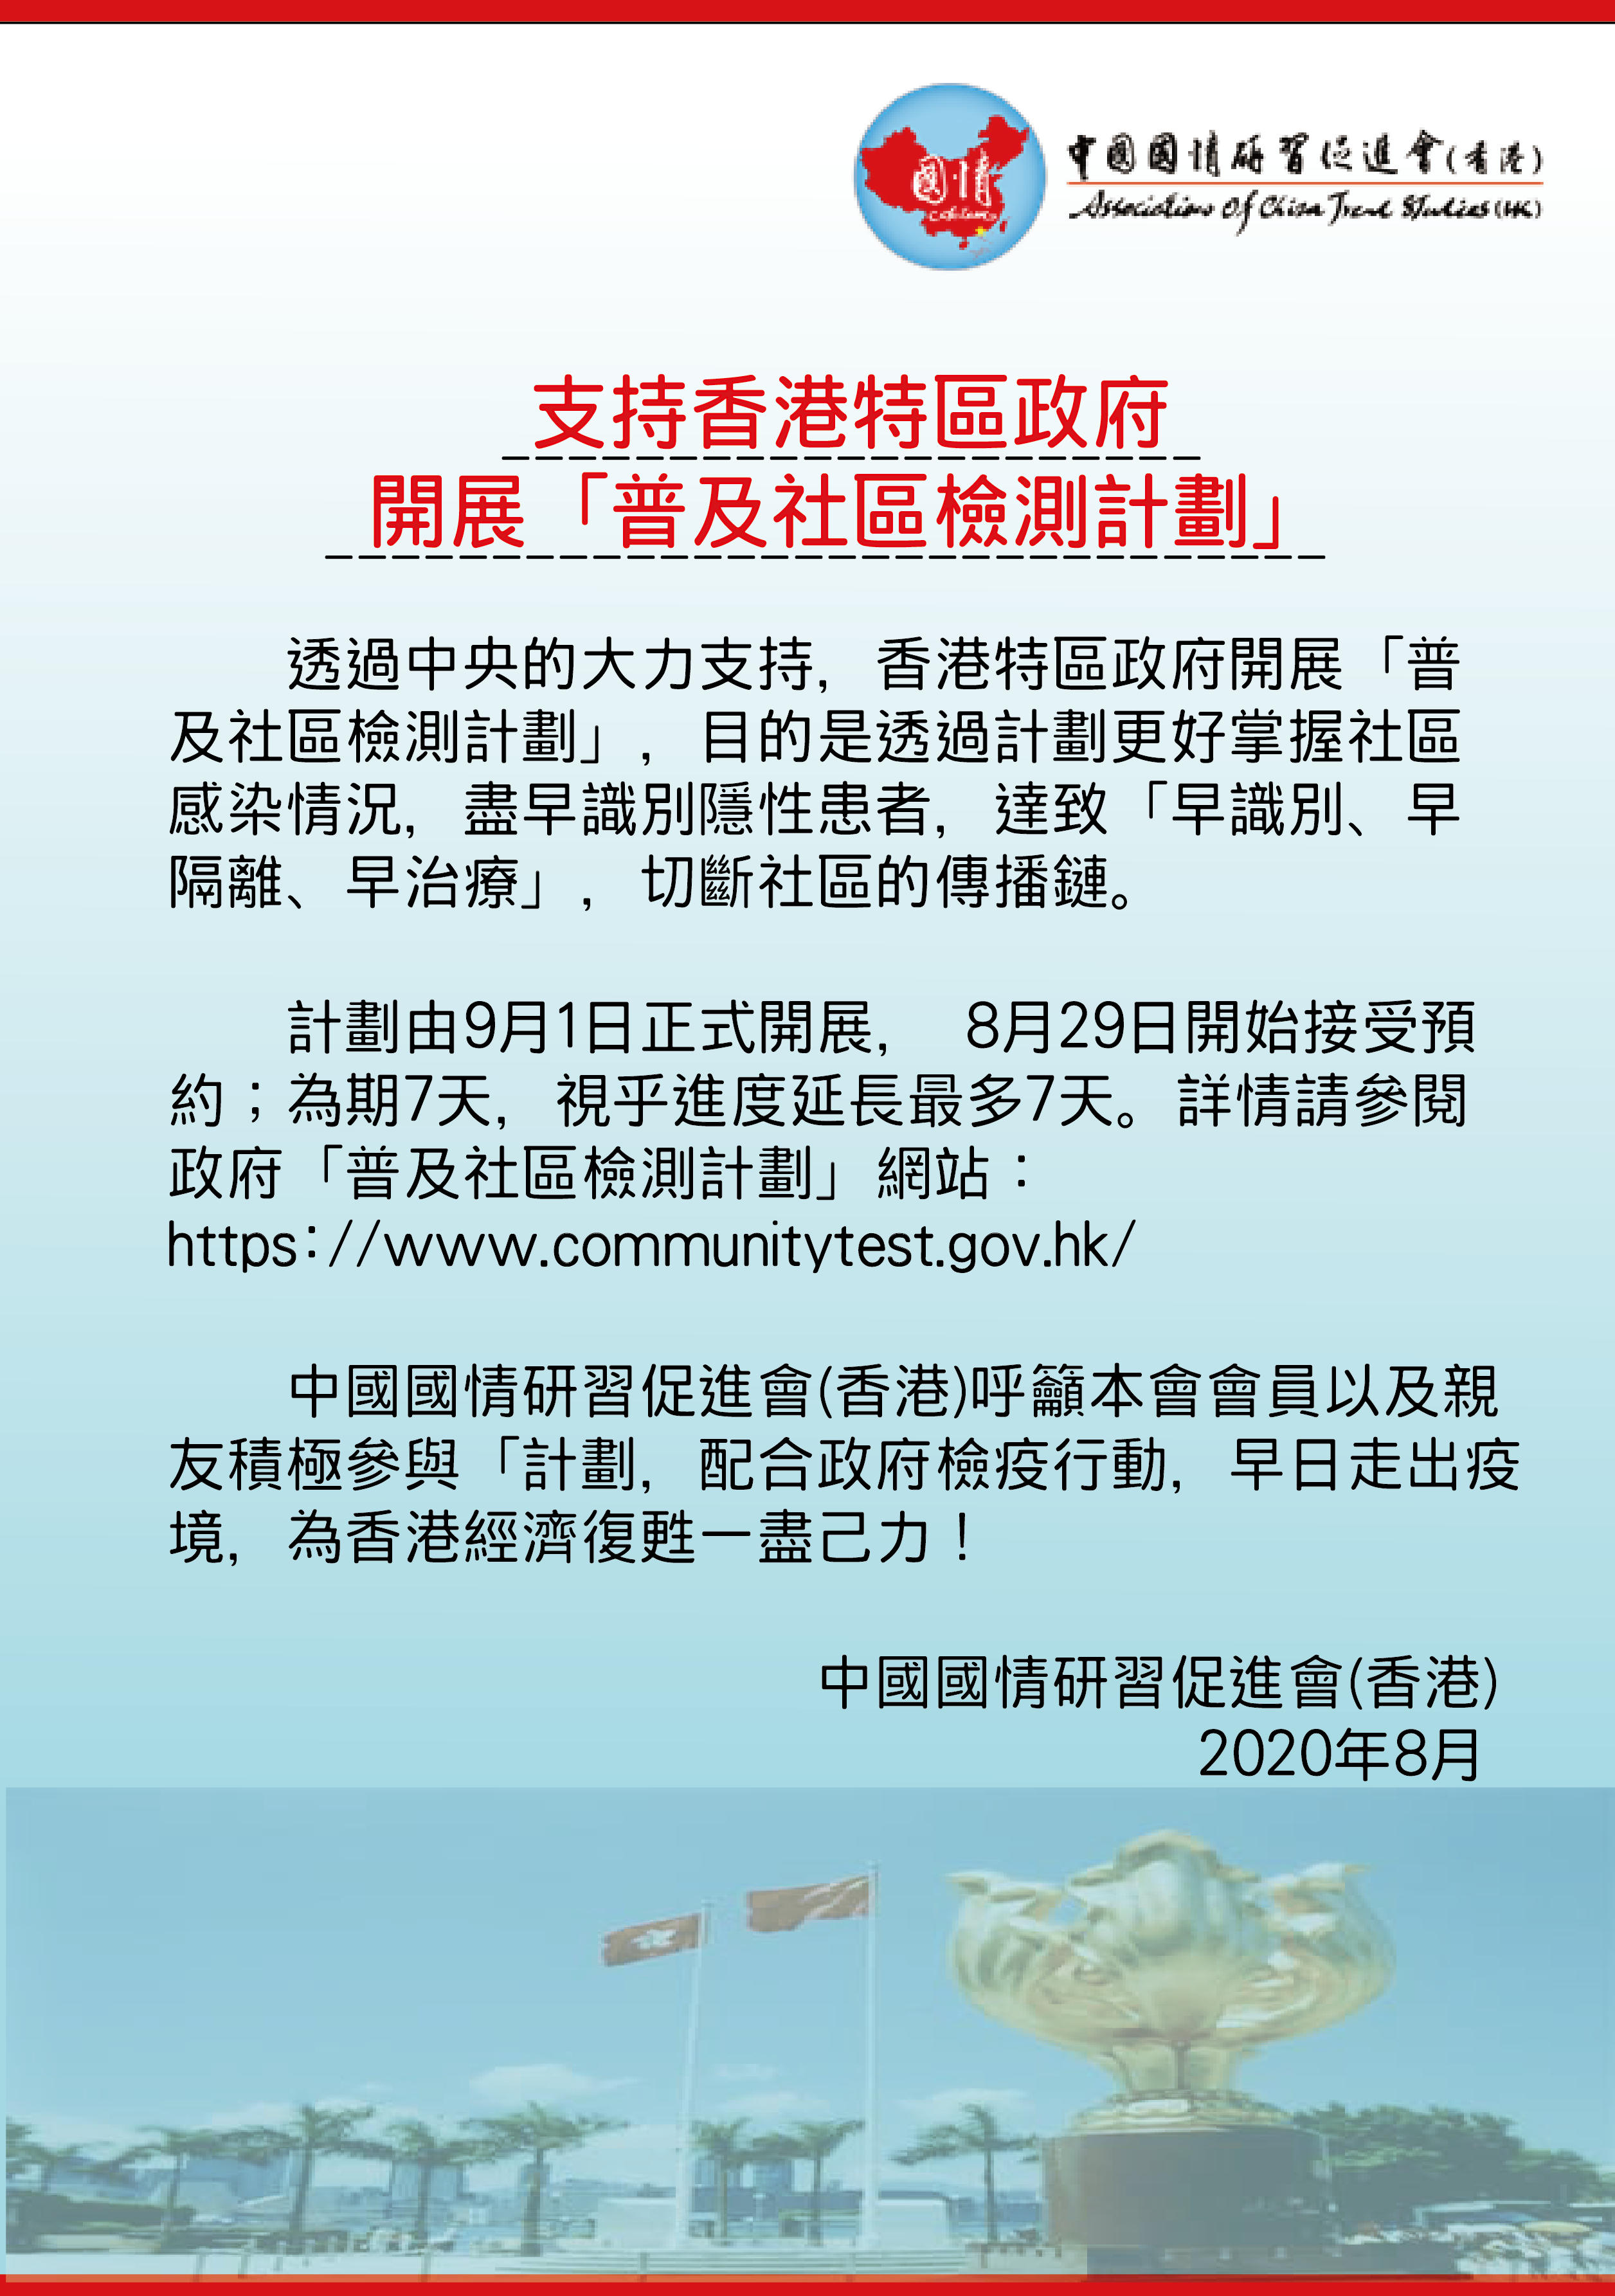 2020-0829 支持香港特區政府開展「普及社區檢測計劃」